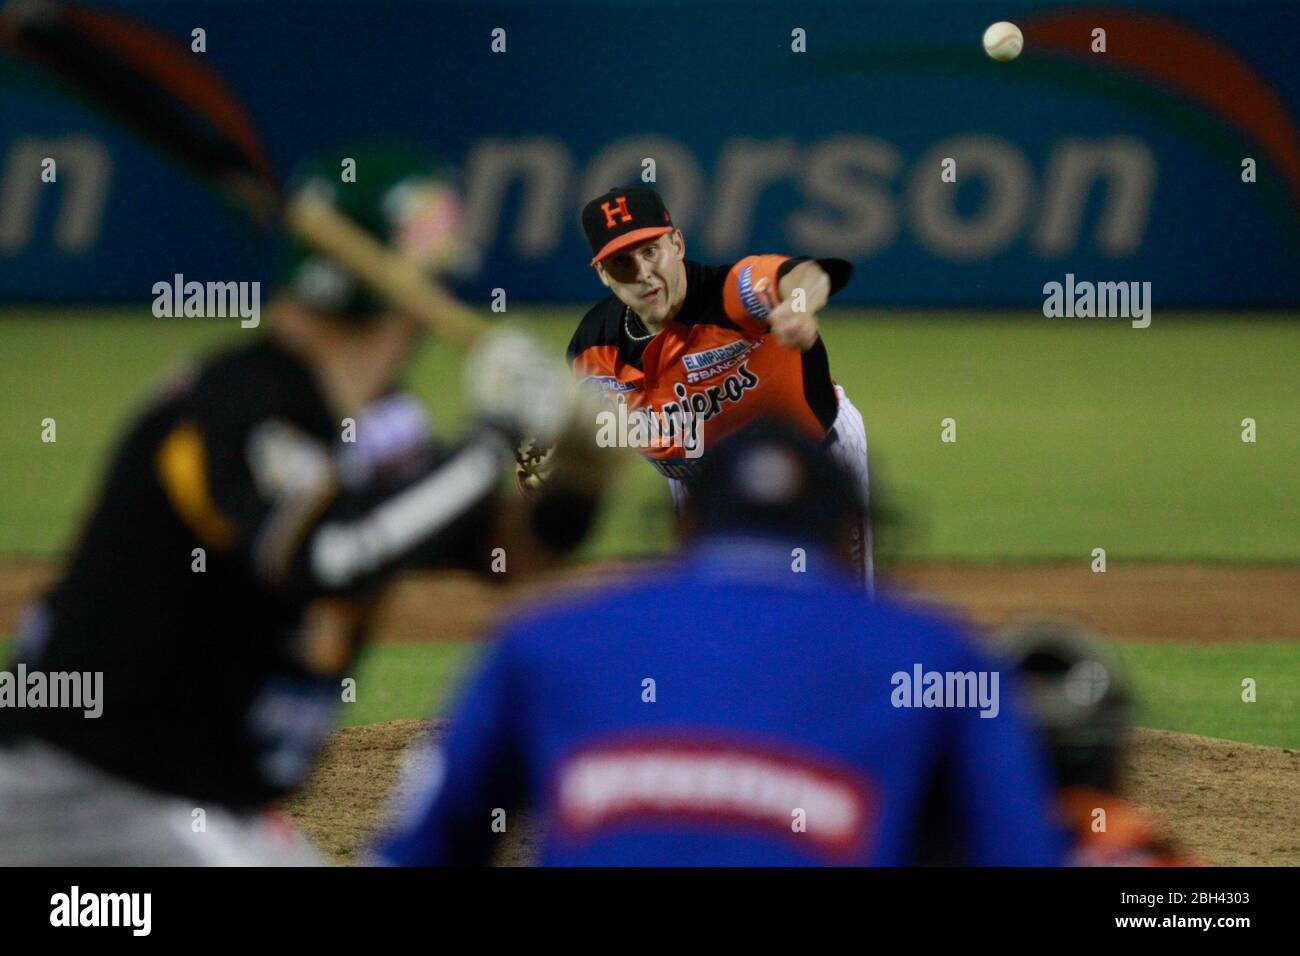 Ryan Verdugo, Pitcher de naranjeros, durante el juego de beisbol de Naranjeros vs Cañeros durante la primera Serie de la Liga Mexicana del Pacifico. Stockfoto